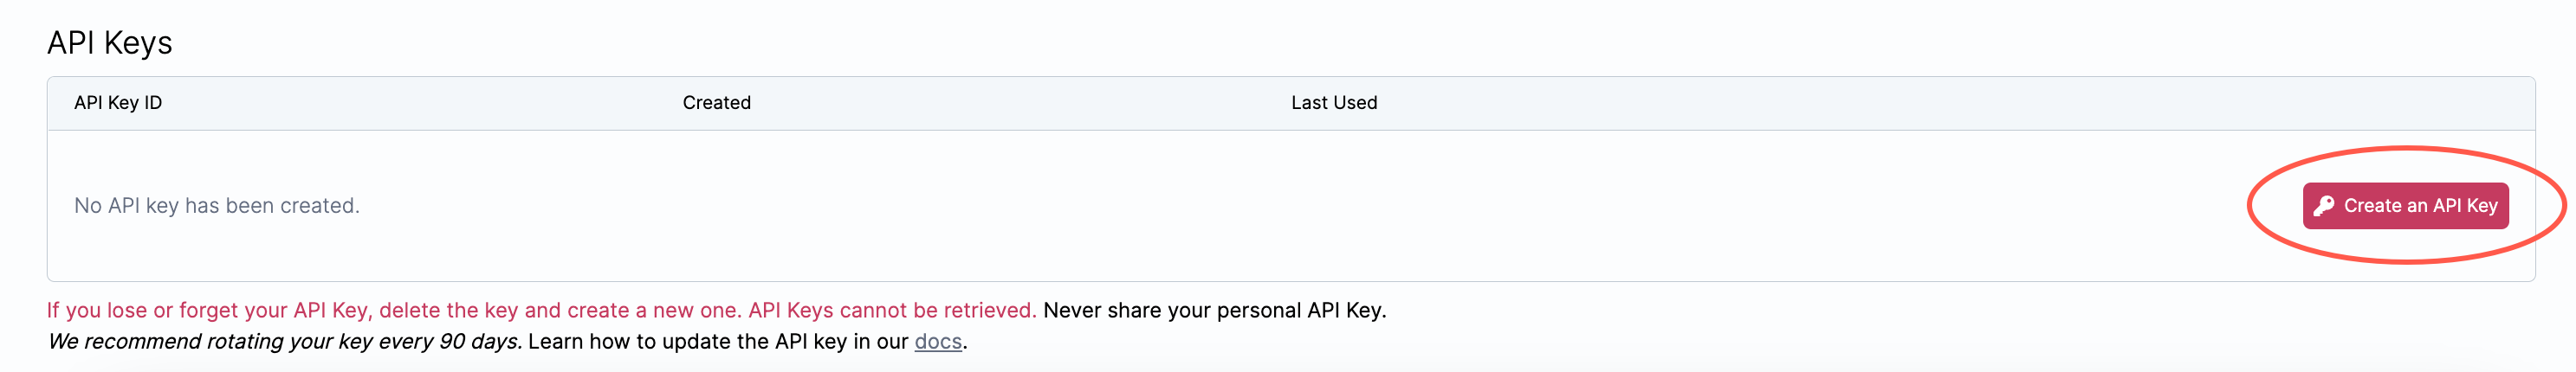 Create API Key